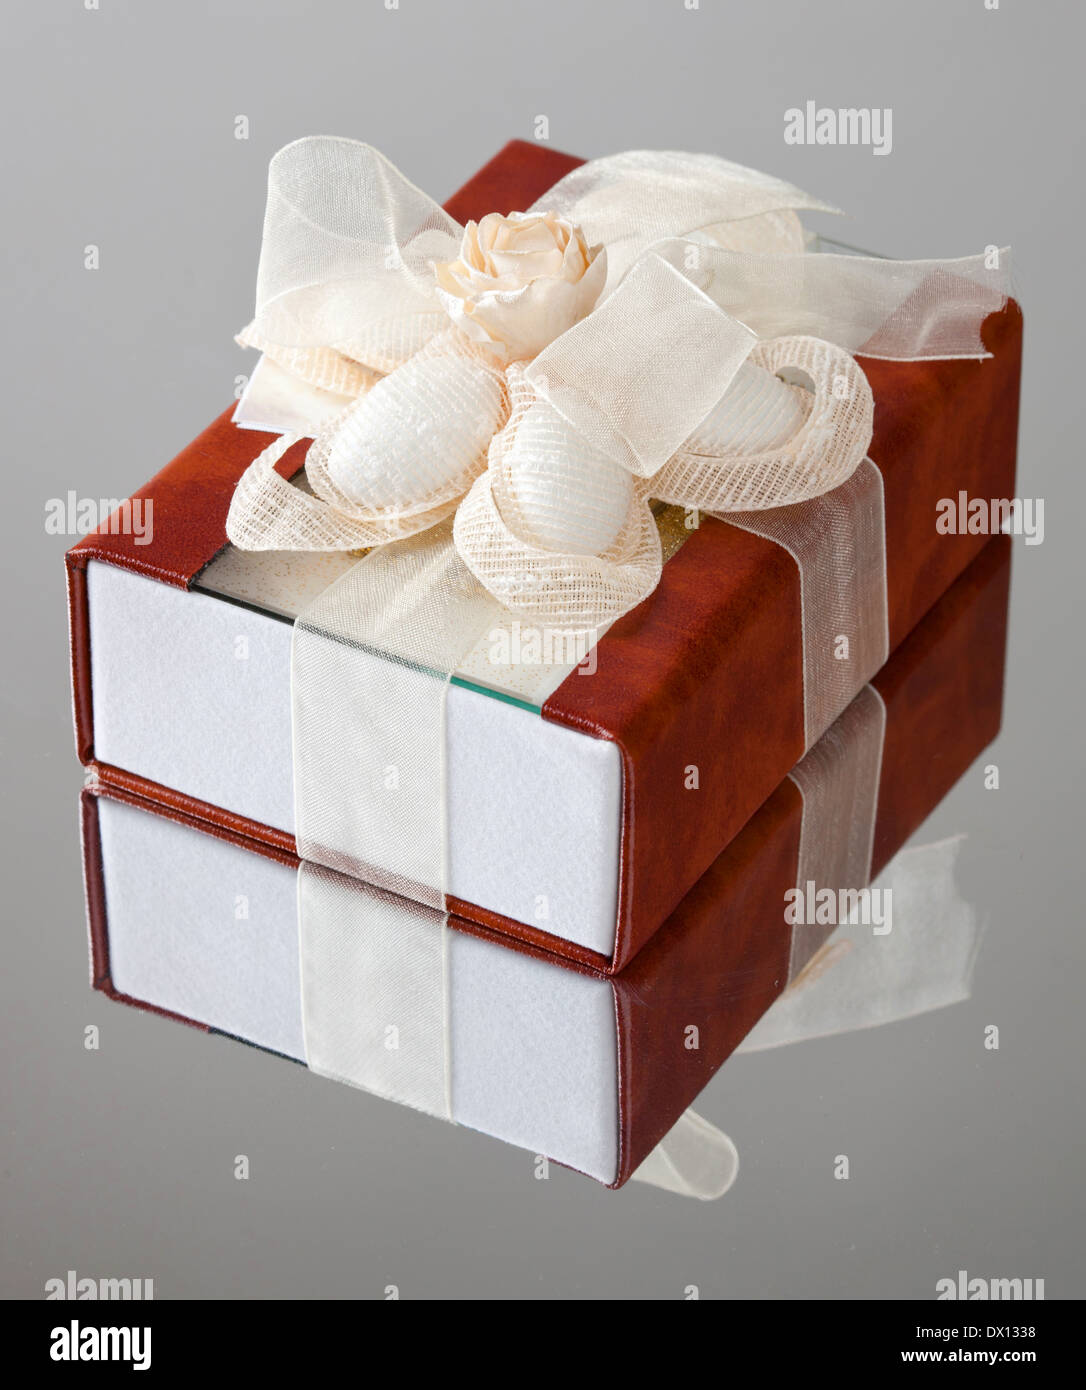 La boîte cadeau avec un couvercle marron est enveloppé par une bande beige avec un archet. Banque D'Images